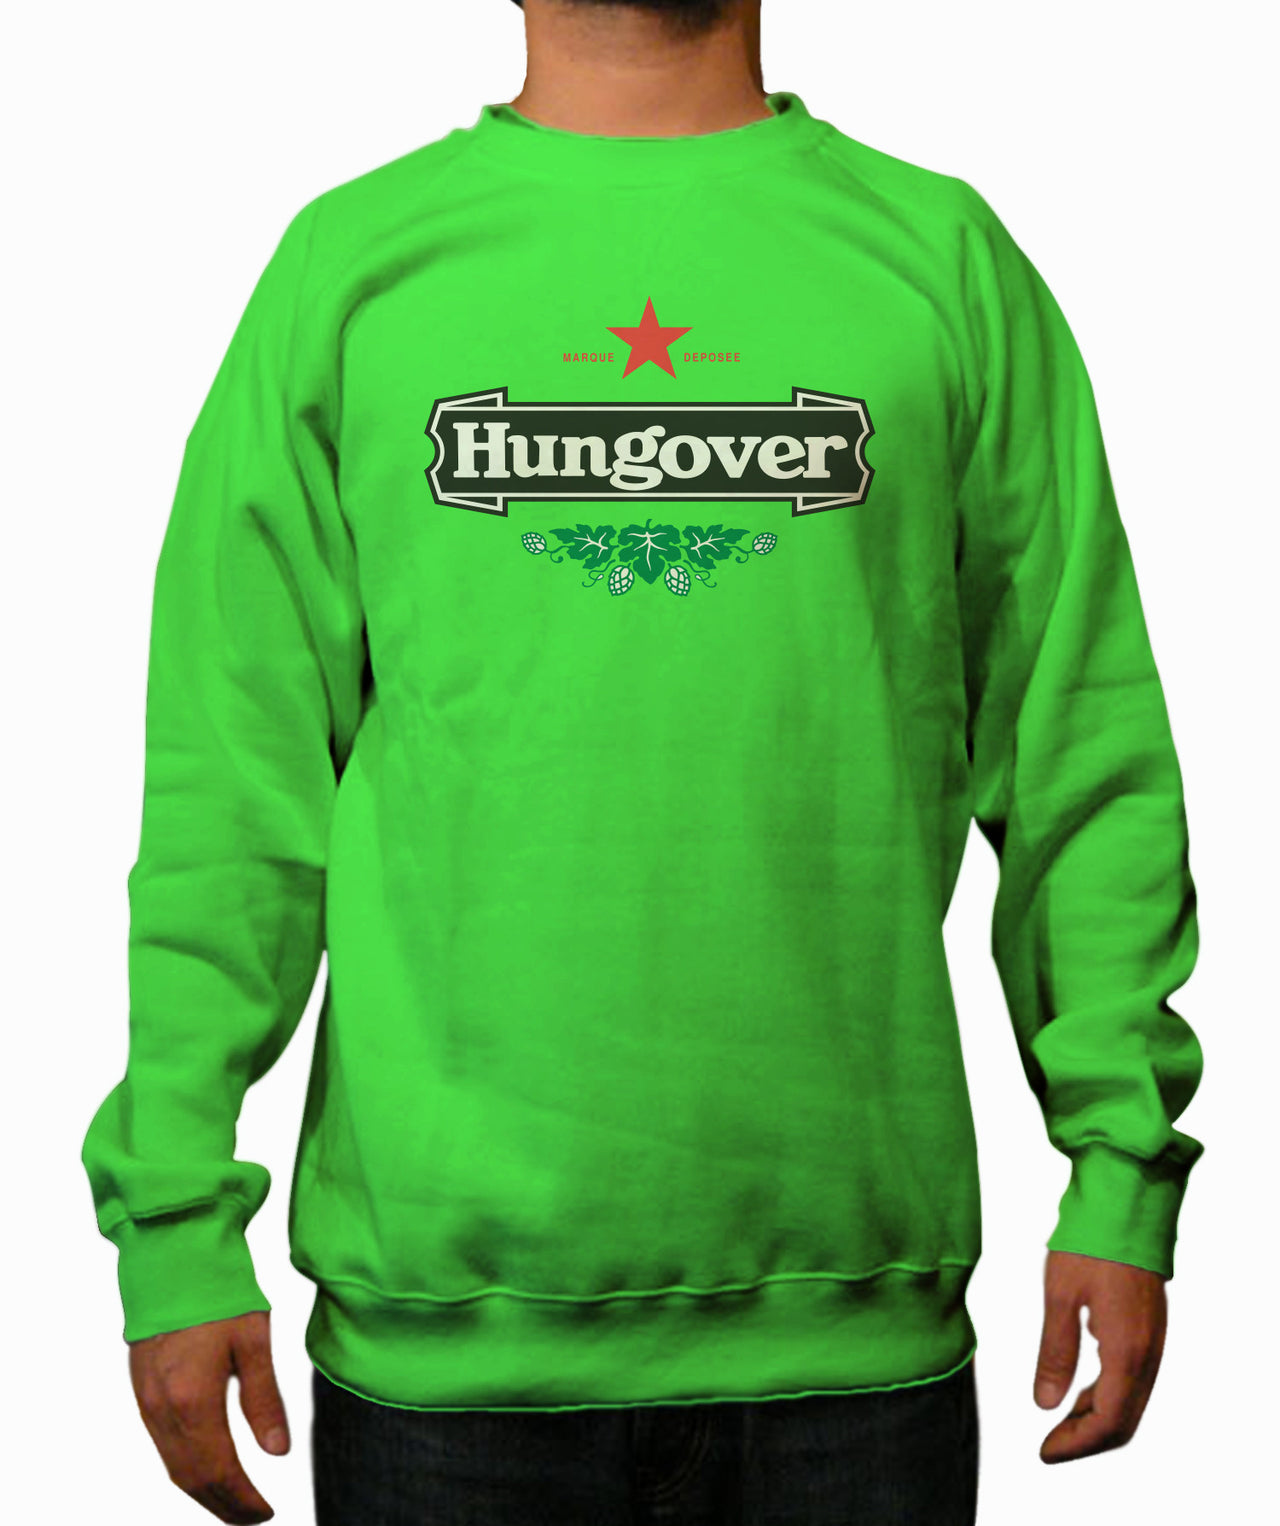 Hangover Green Crewneck Sweatshirt - TshirtNow.net - 1